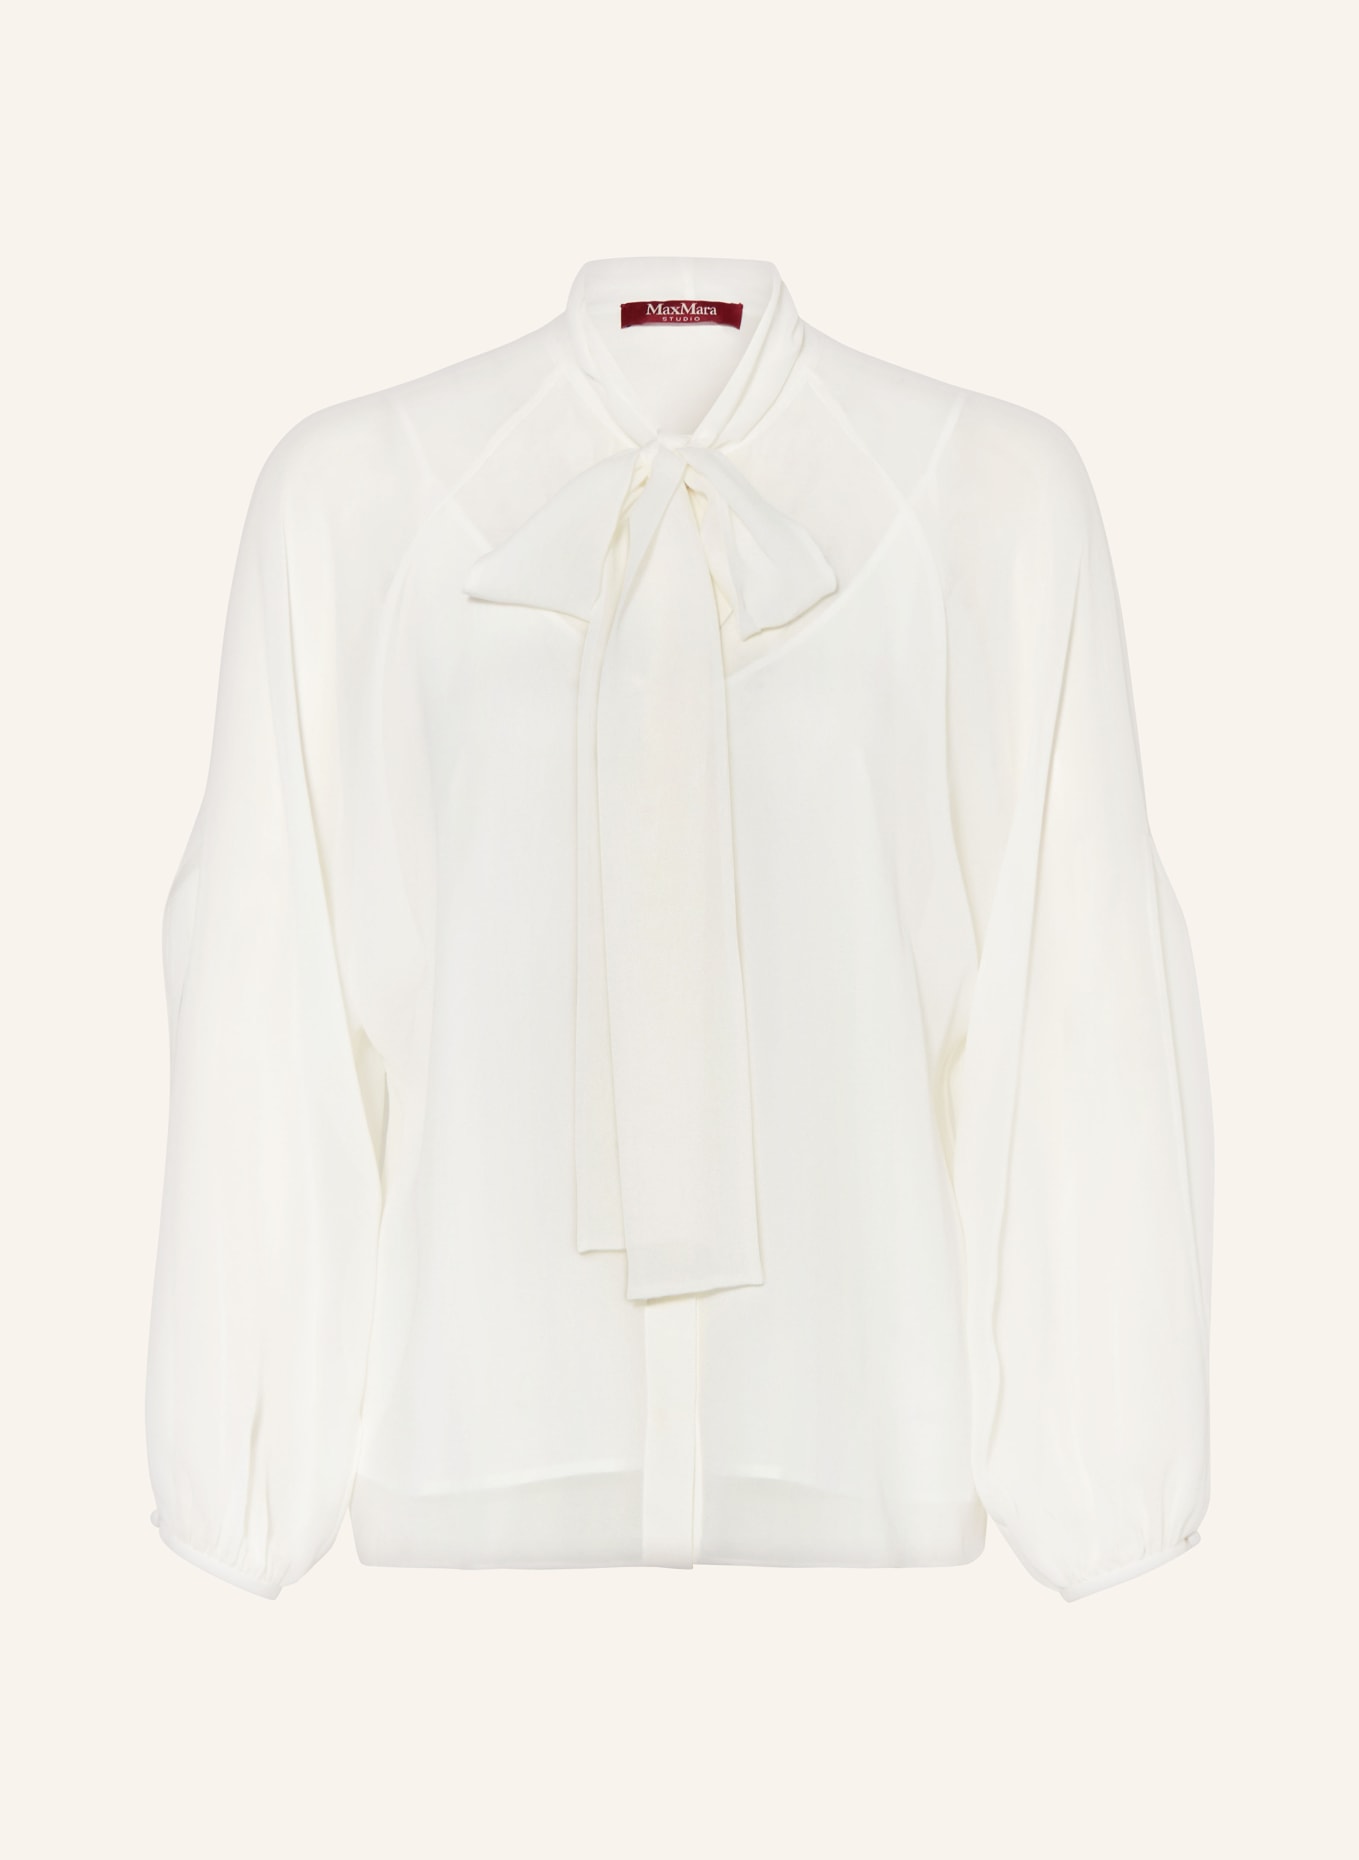 MaxMara STUDIO Bow-tie blouse FASCINO in silk, Color: WHITE (Image 1)